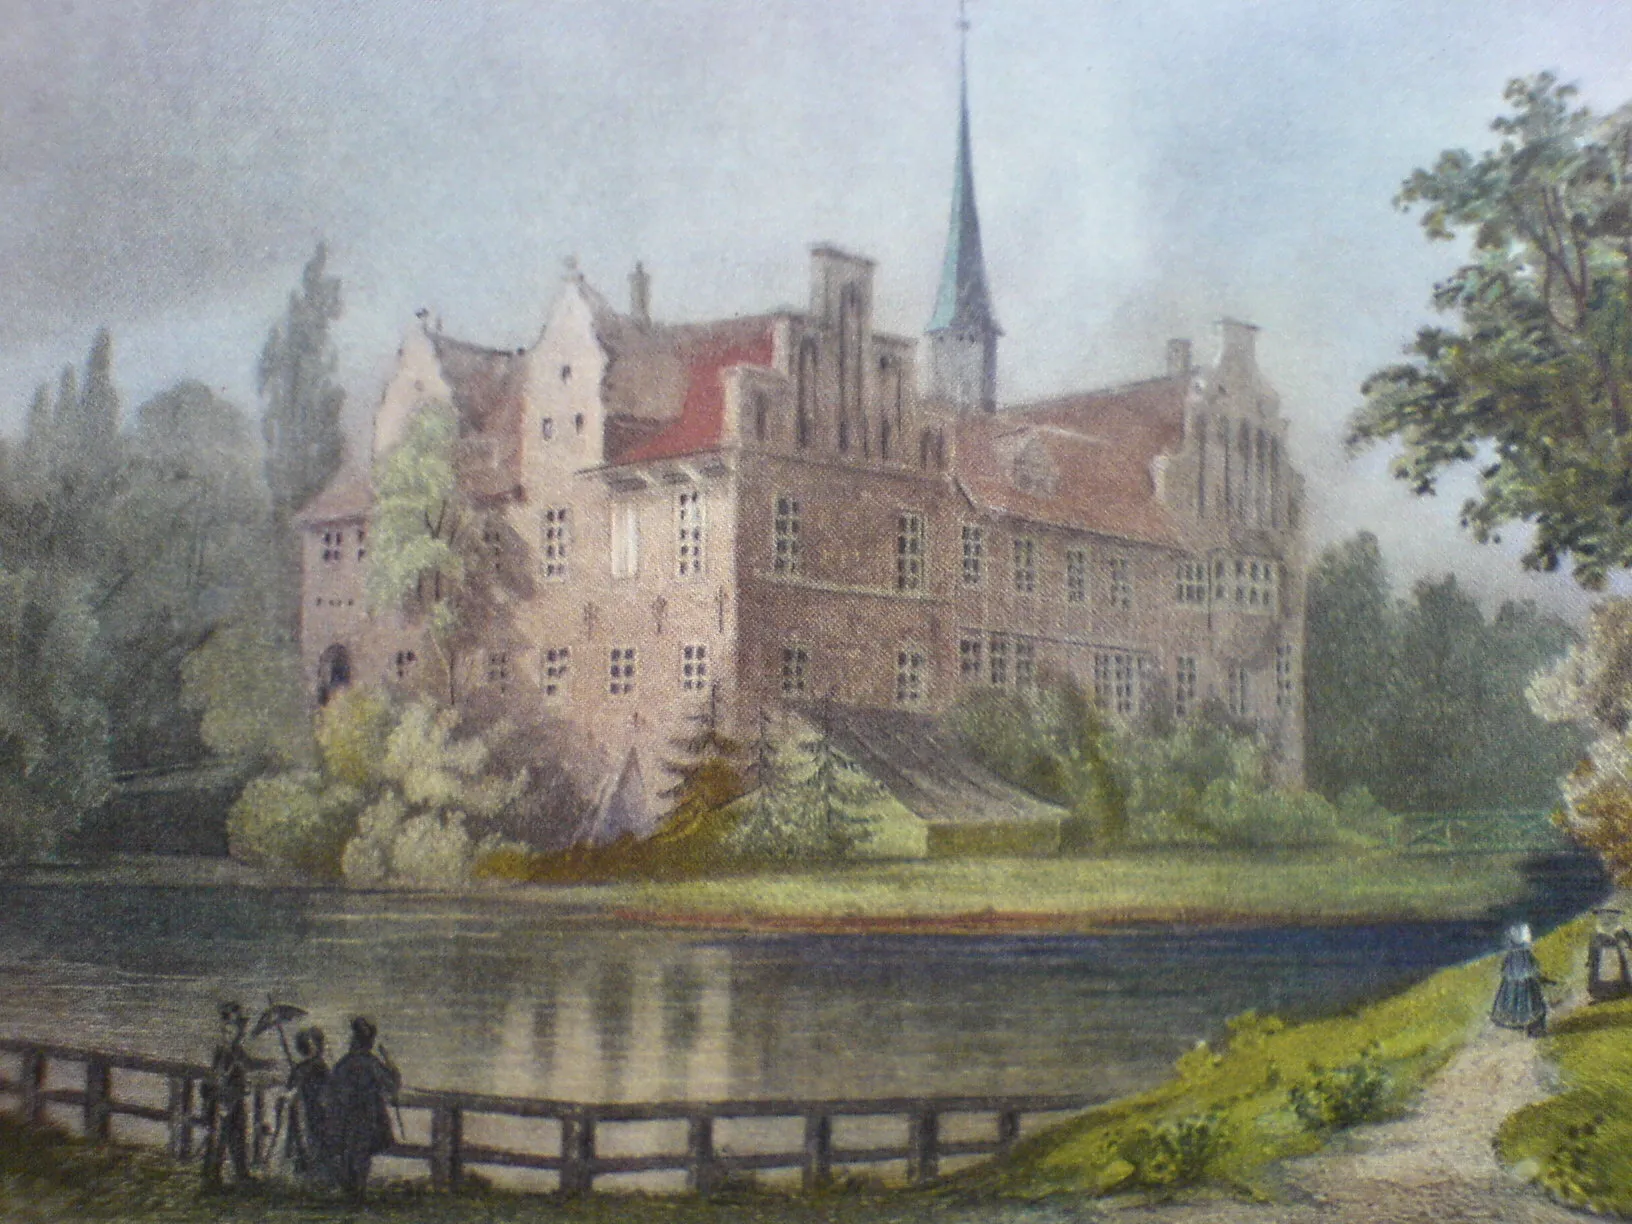 Photo showing: Bildbeschreibung: Bergedorfer Schloss ca. 1850
Quelle: Lithographie. ca. 1850
Künstler: de:Carl Martin Laeisz
Fotograf/Zeichner: Besitz podracerHH
Datum: 04.2006